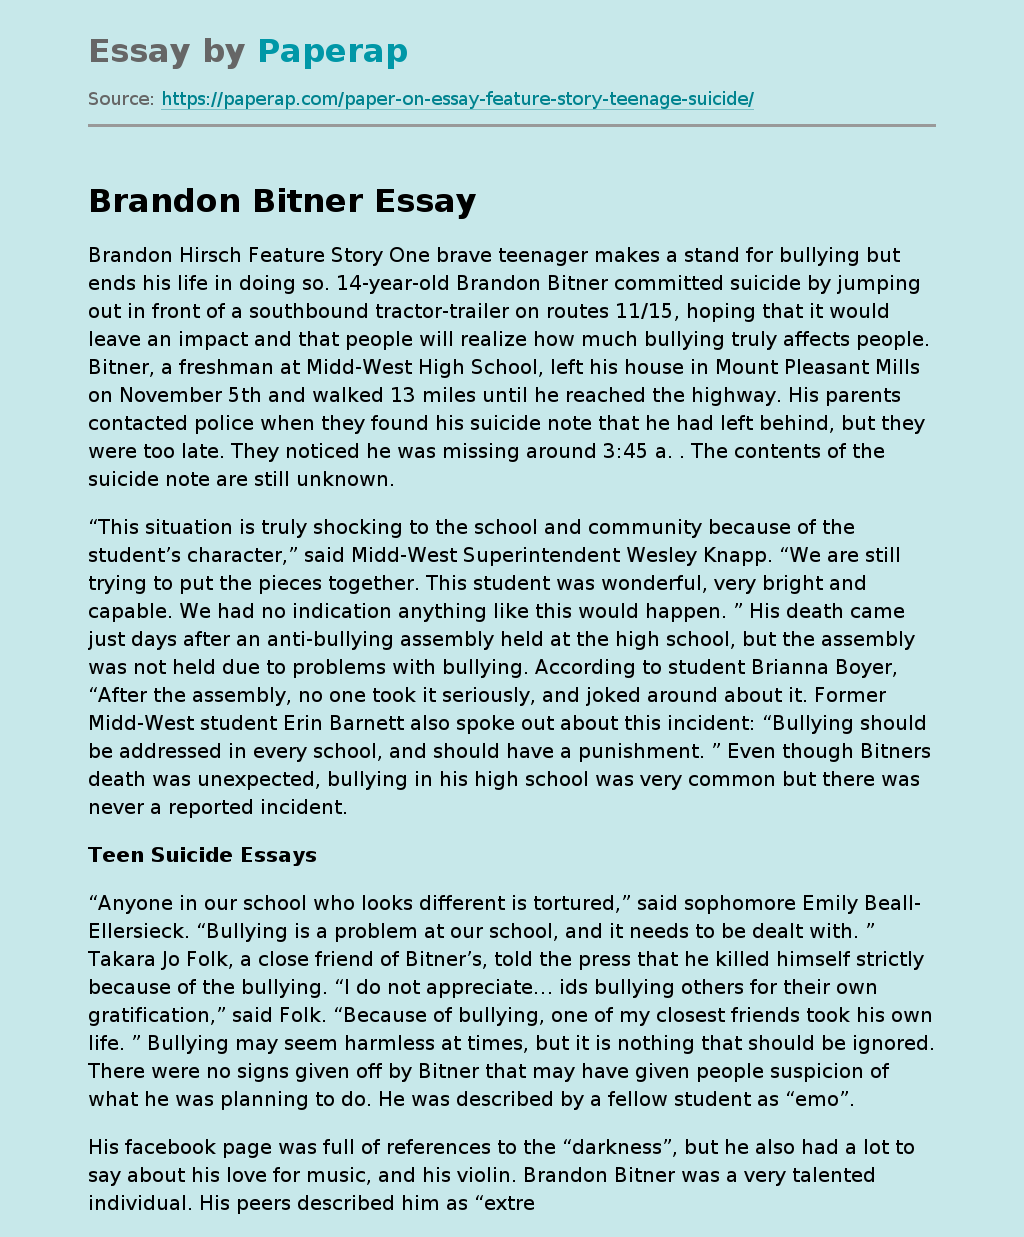 Brandon Hirsch Feature Story